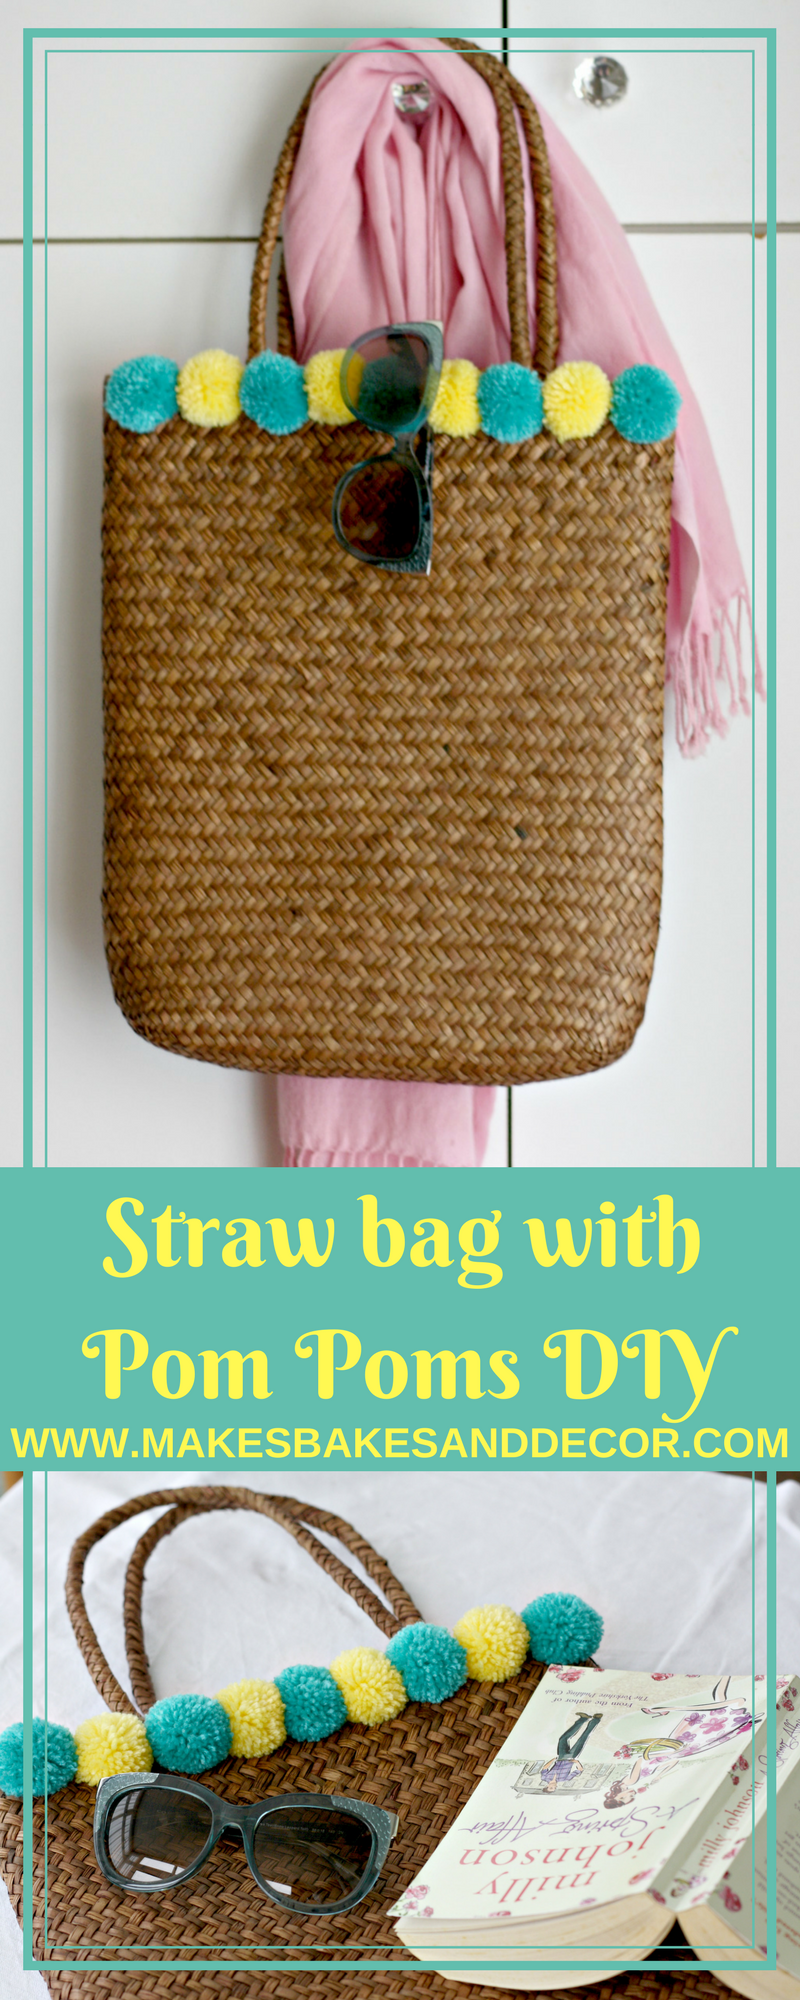 straw bag with pom poms diy